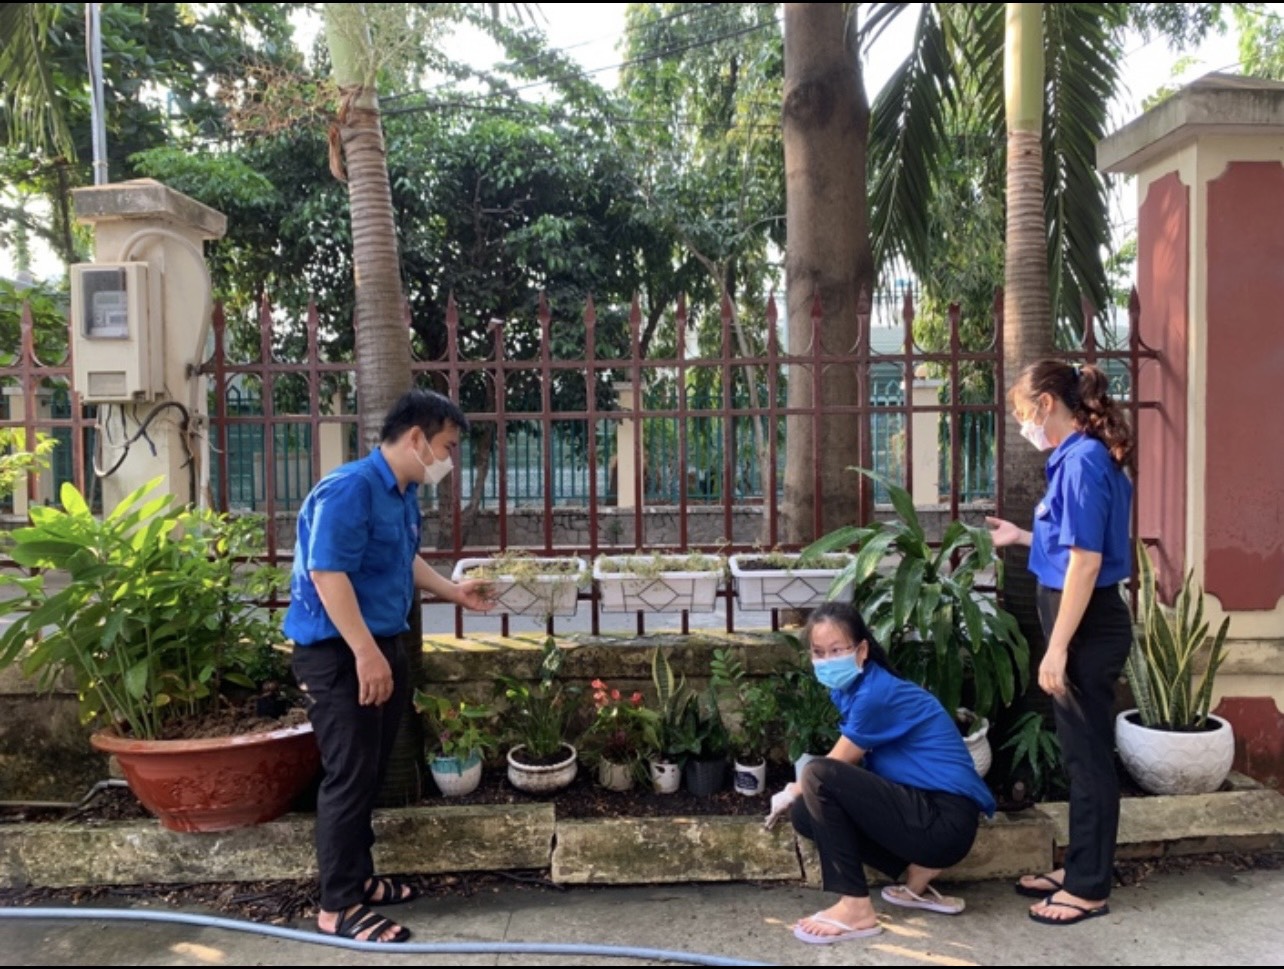 Chi đoàn Chi cục thi hành án dân sự quận Bình Thạnh trồng cây Kỷ niệm 132 năm ngày sinh Chủ tịch Hồ Chí Minh 19/5/1890-19/5/2022.